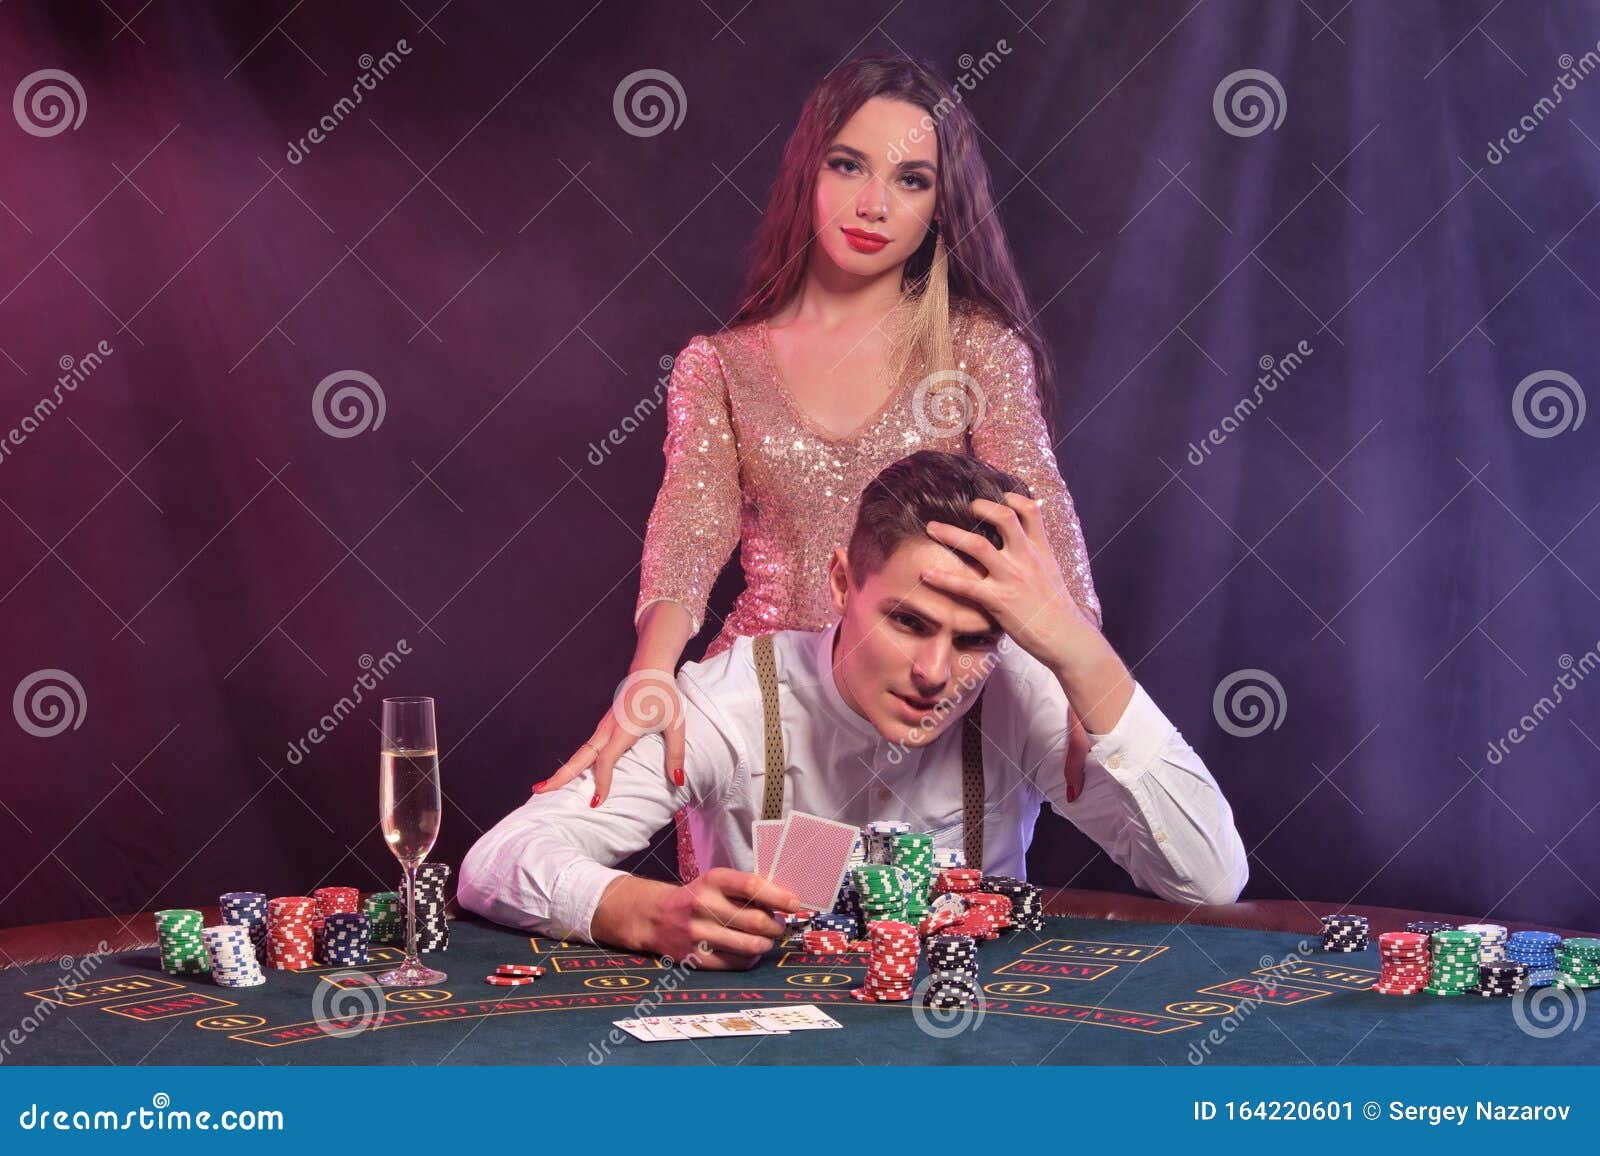 Игры девушка играет в карты cash out on betfair